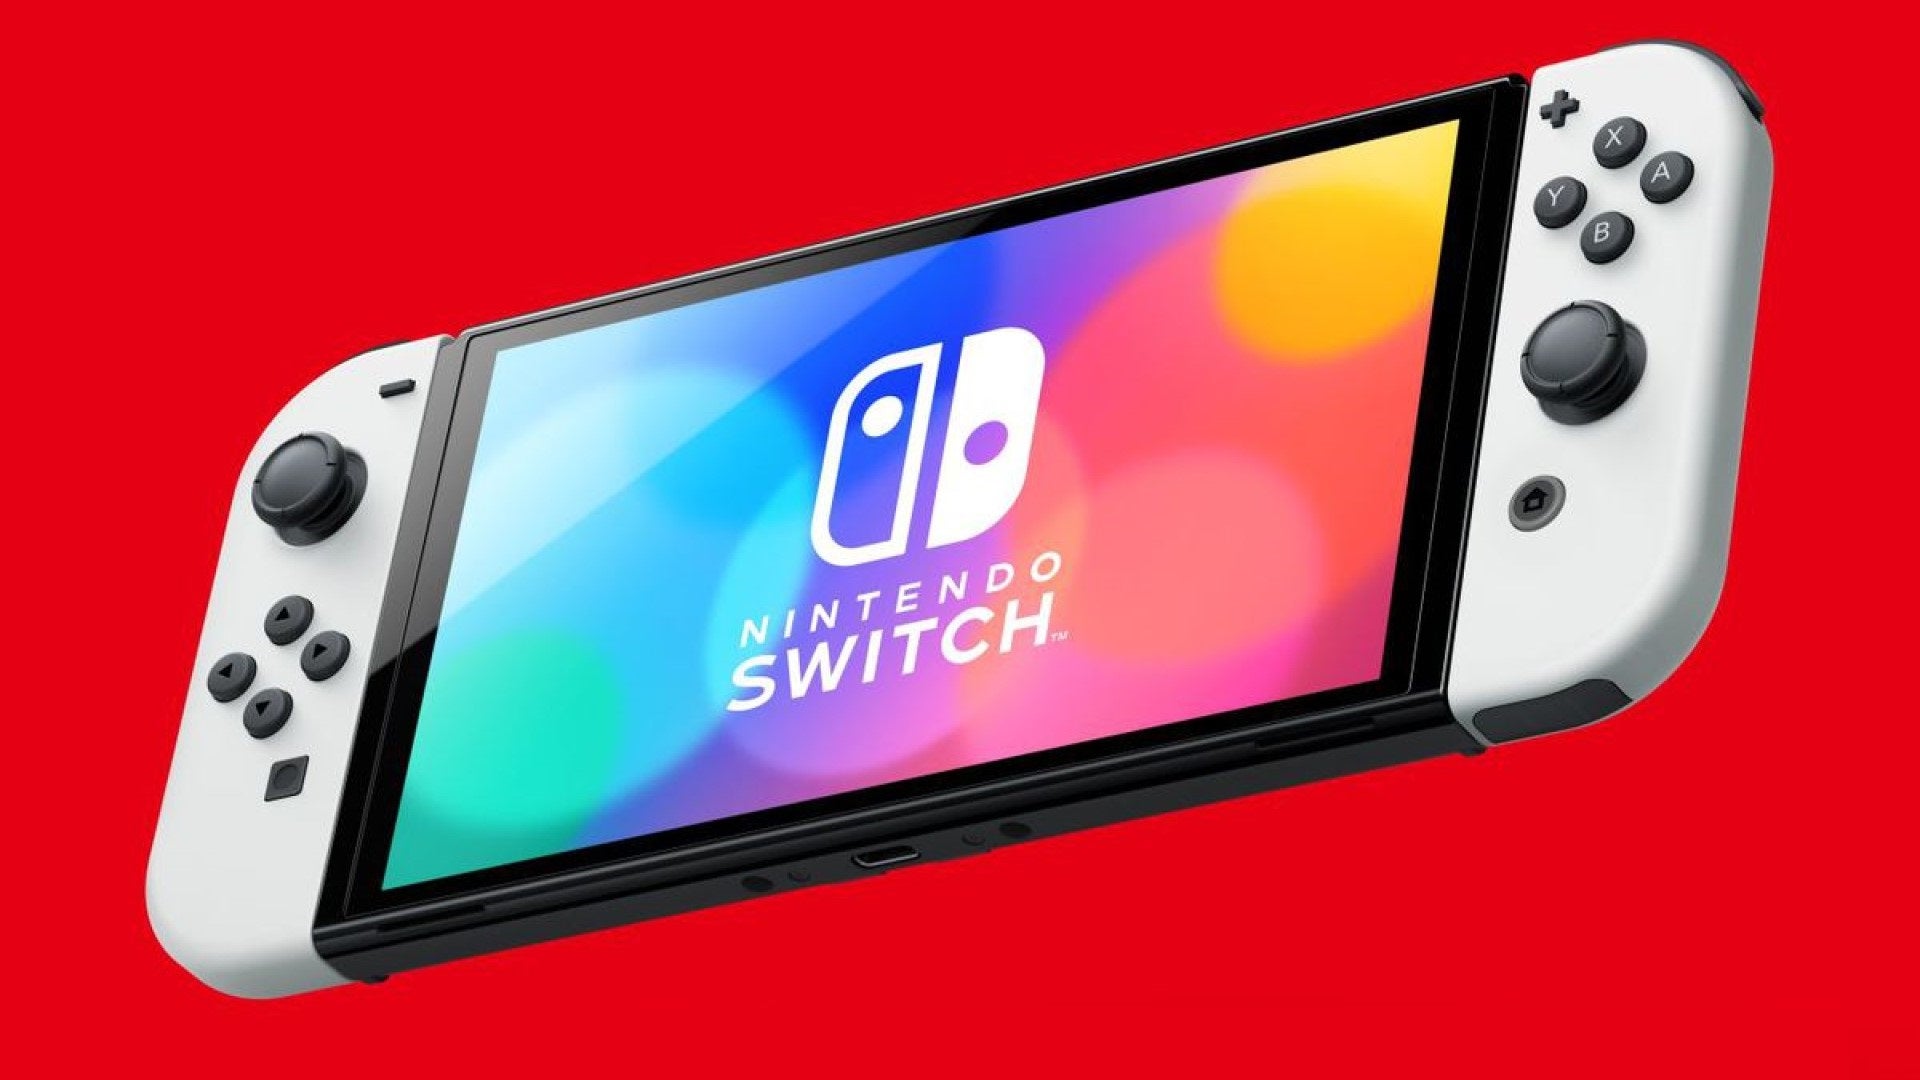 Immagine di Nintendo Switch arriva a 25 milioni di unità vendute in Giappone